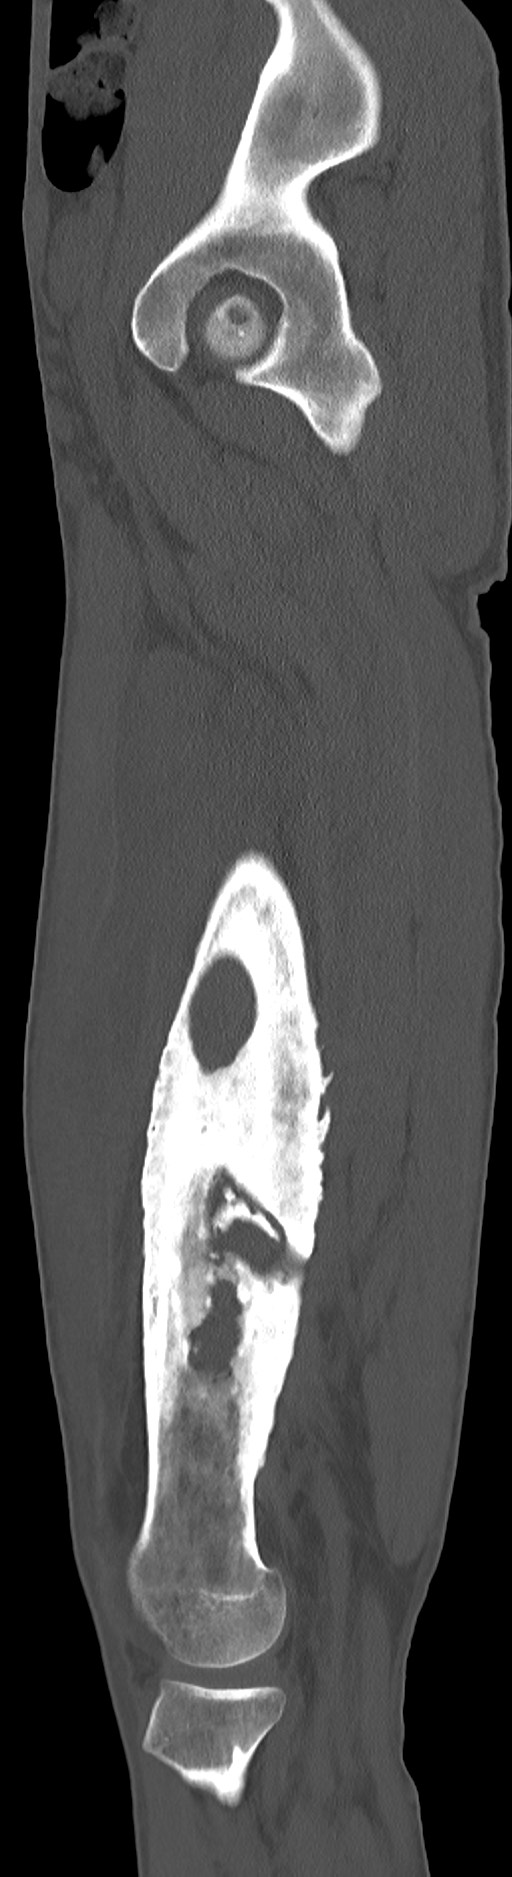 Chronic osteomyelitis (with sequestrum) (Radiopaedia 74813-85822 C 78).jpg